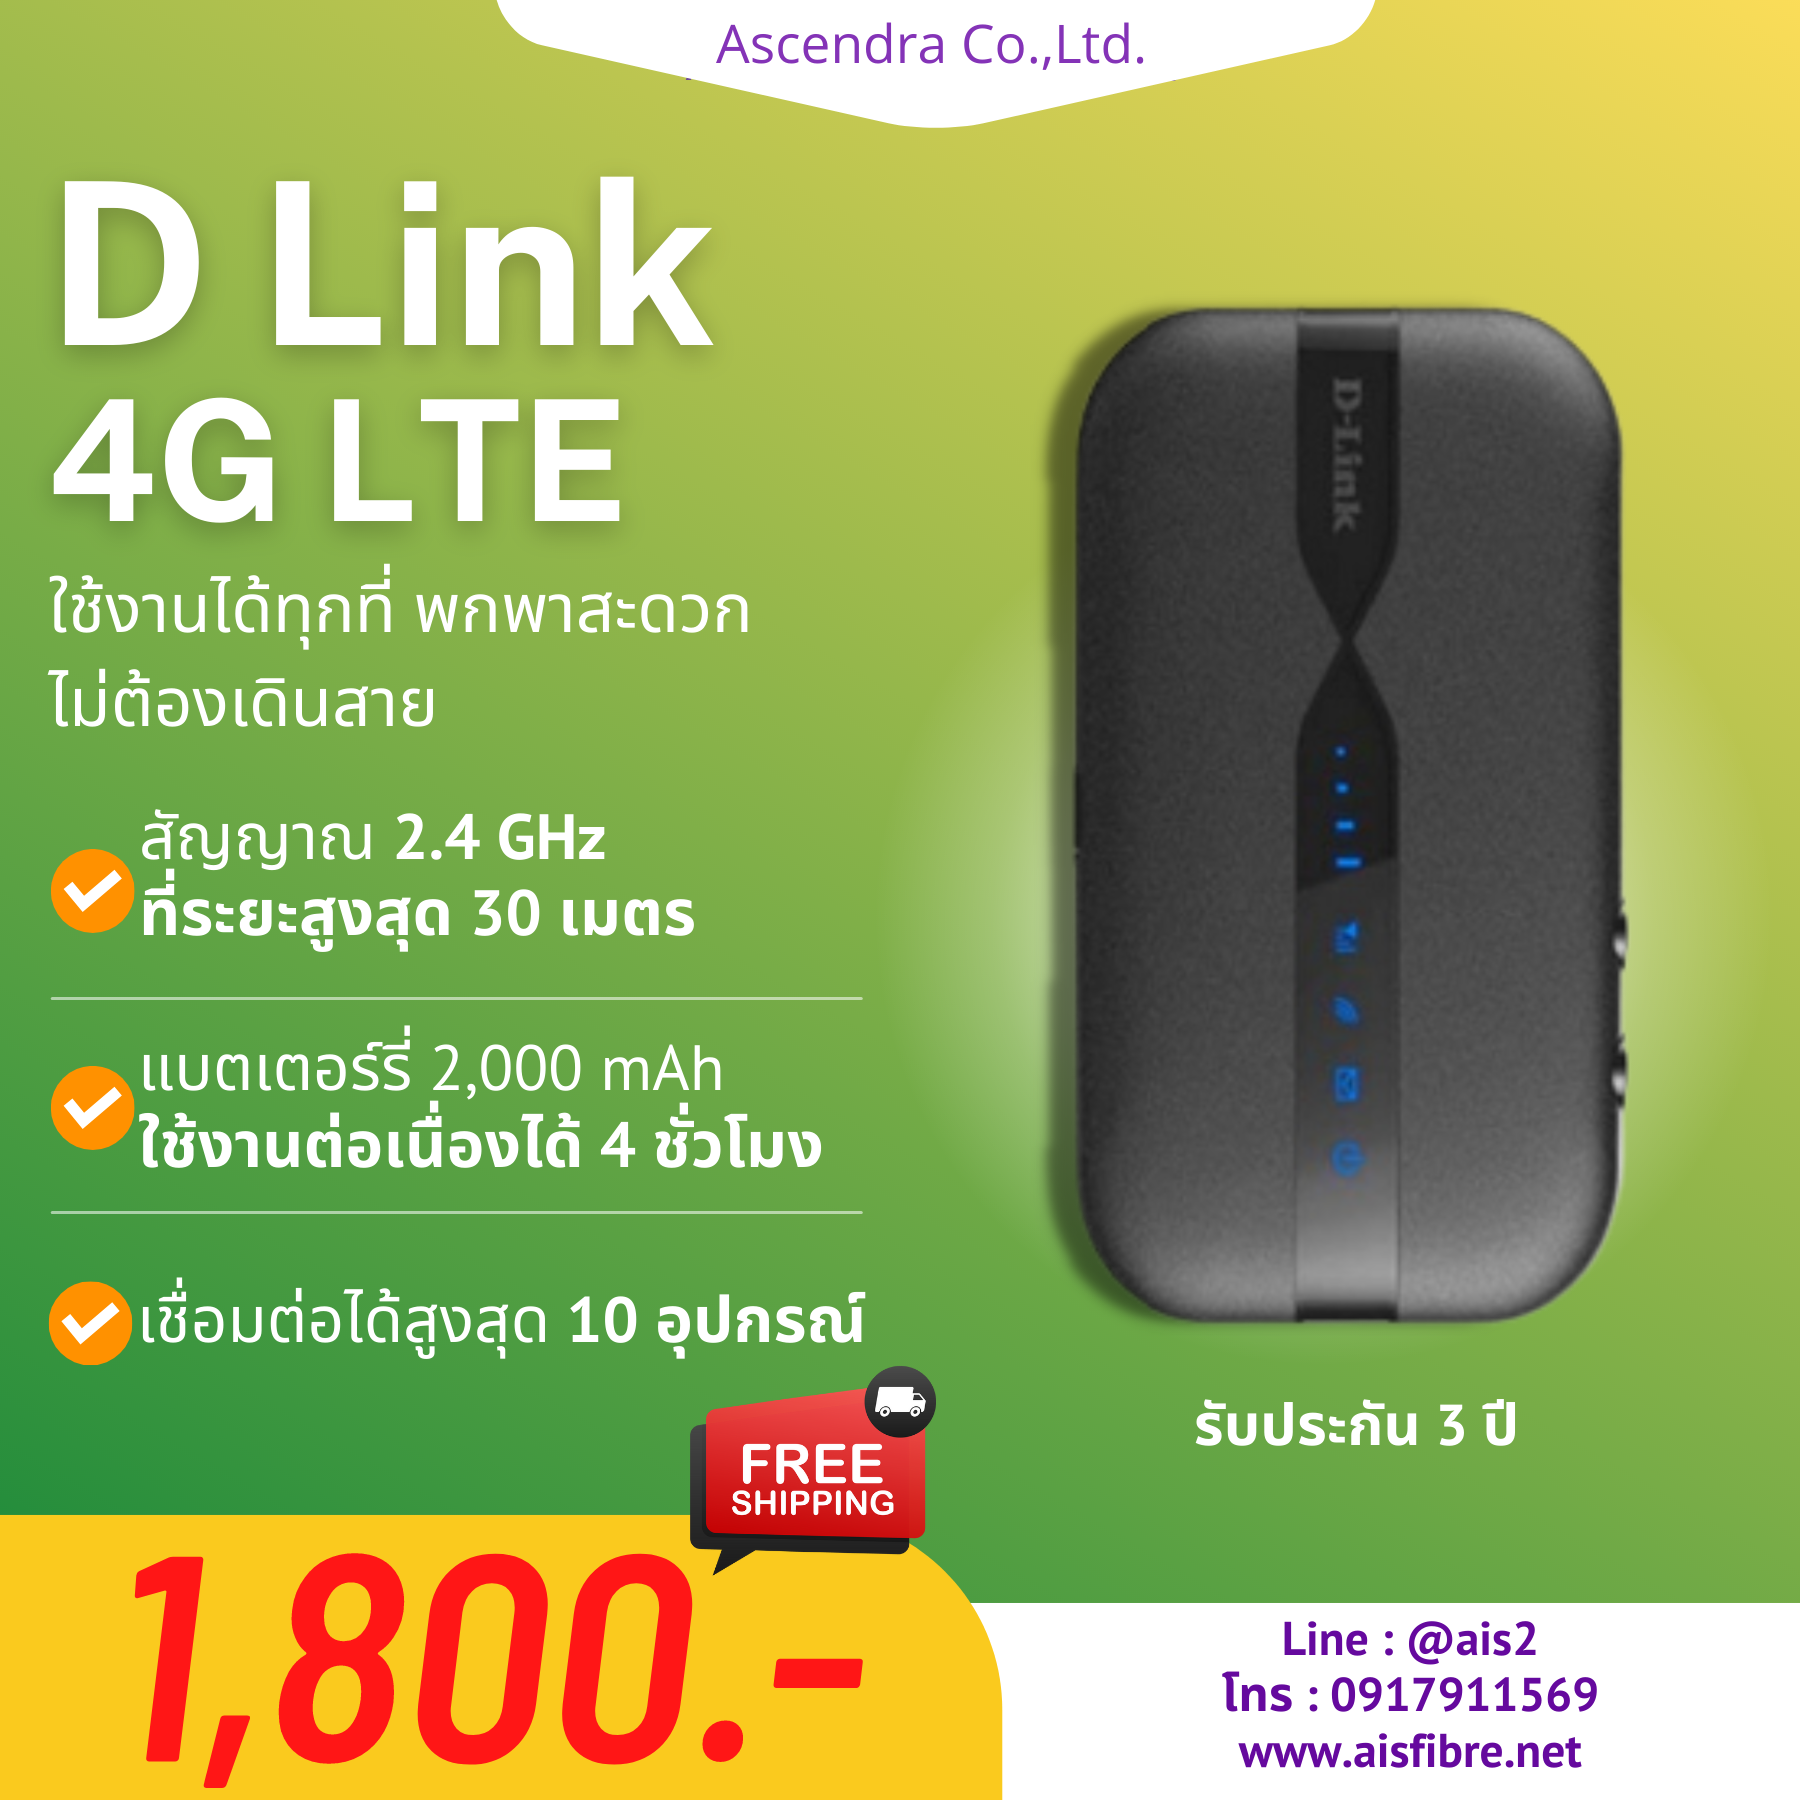 D Link 4G LTE